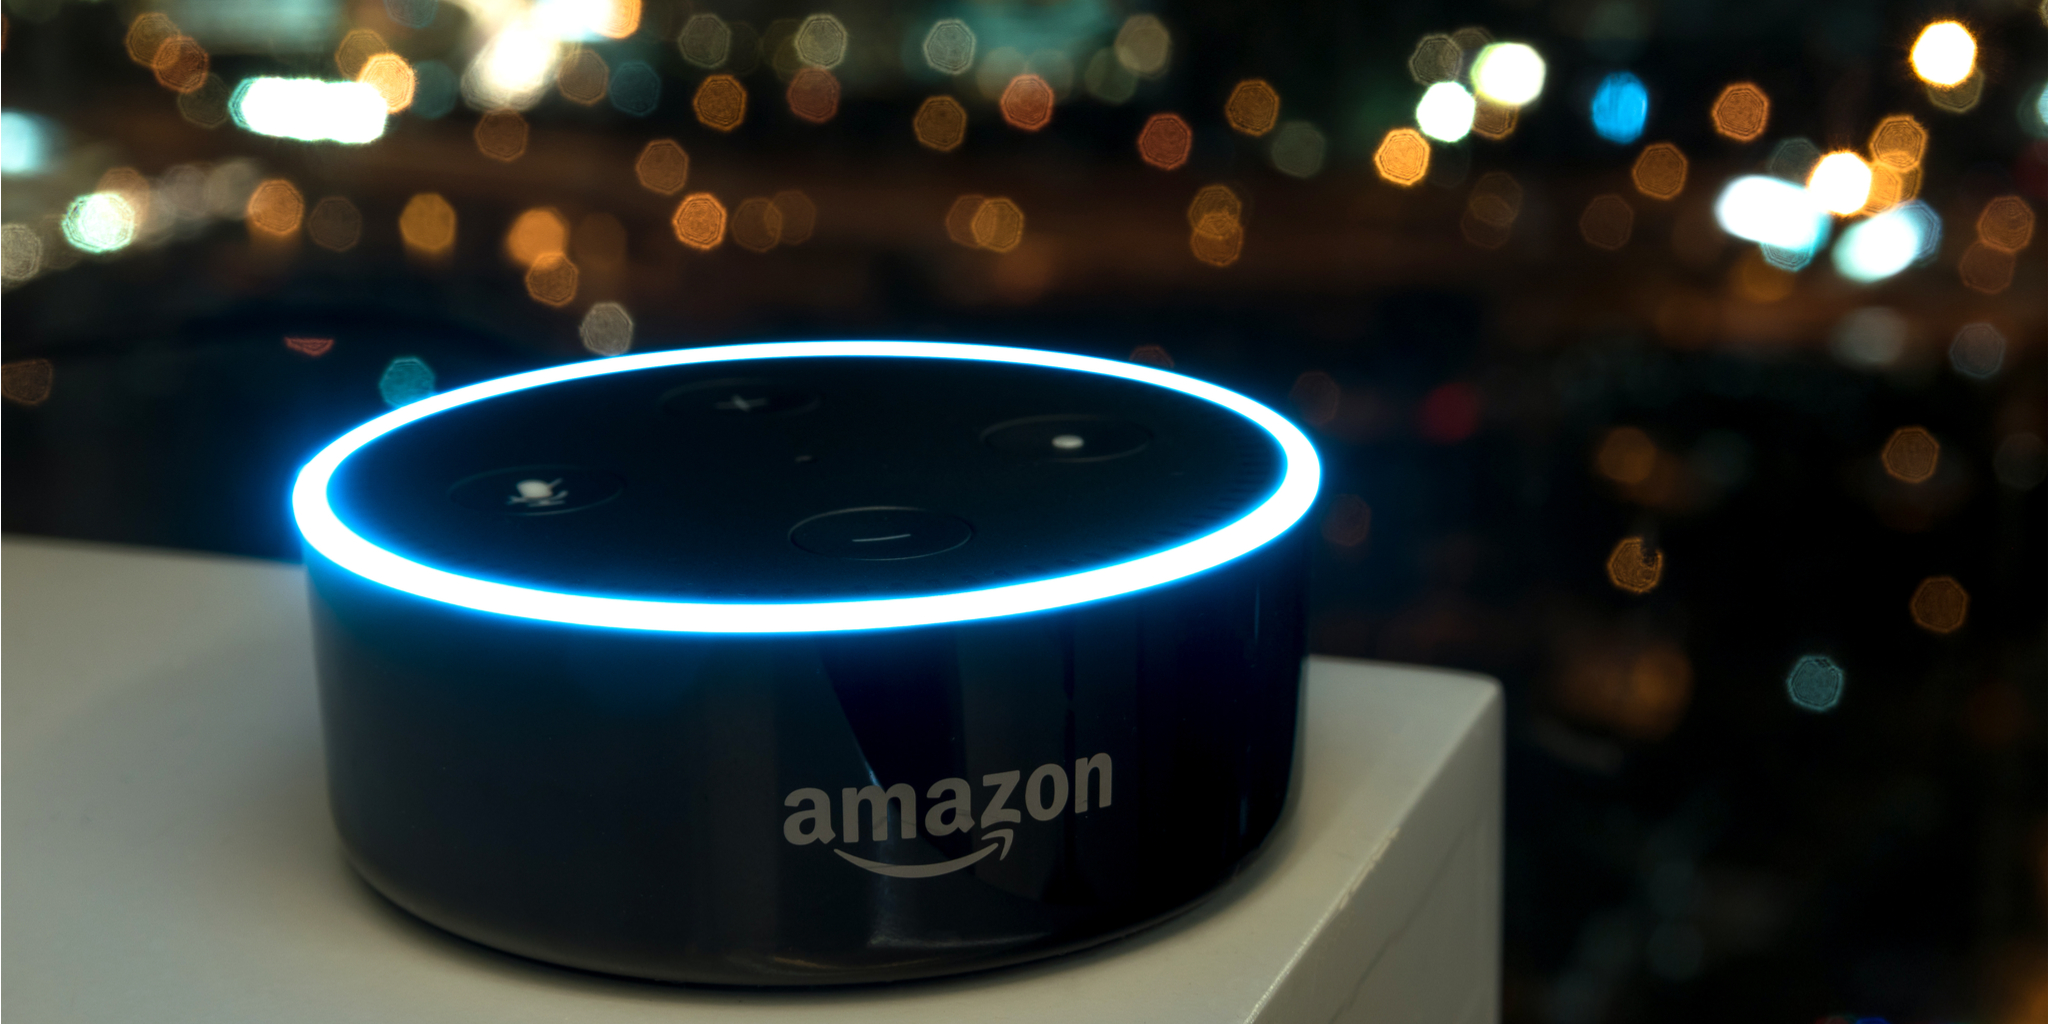 Amazon Echo Secret Özellikleri: Alexa Cihazınızın Yapabileceğini Bilmediğiniz 12 Harika Hile